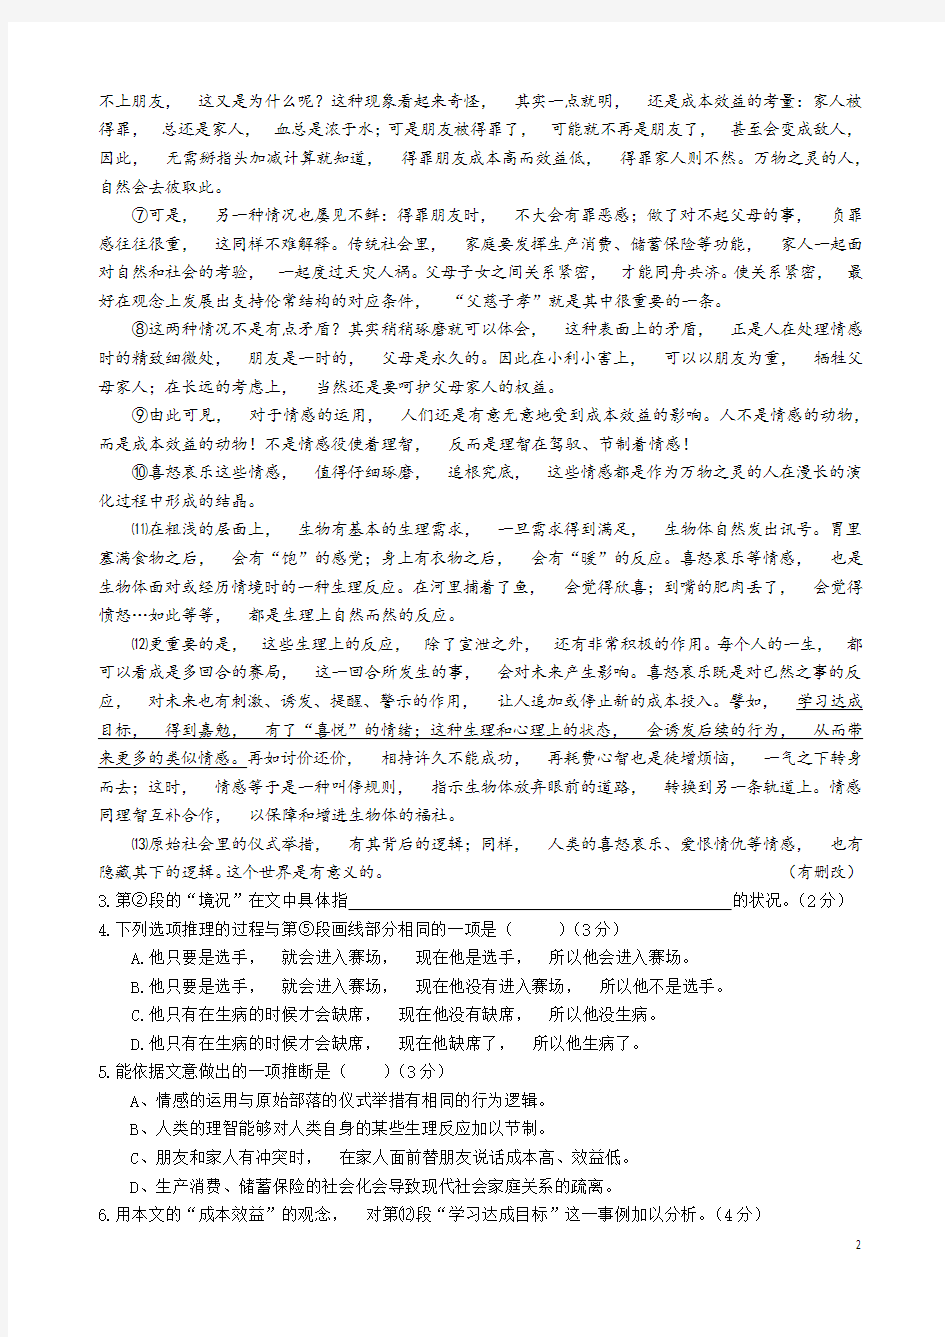 2020年高考模拟复习知识点试卷试题之上海高考语文试卷及答案